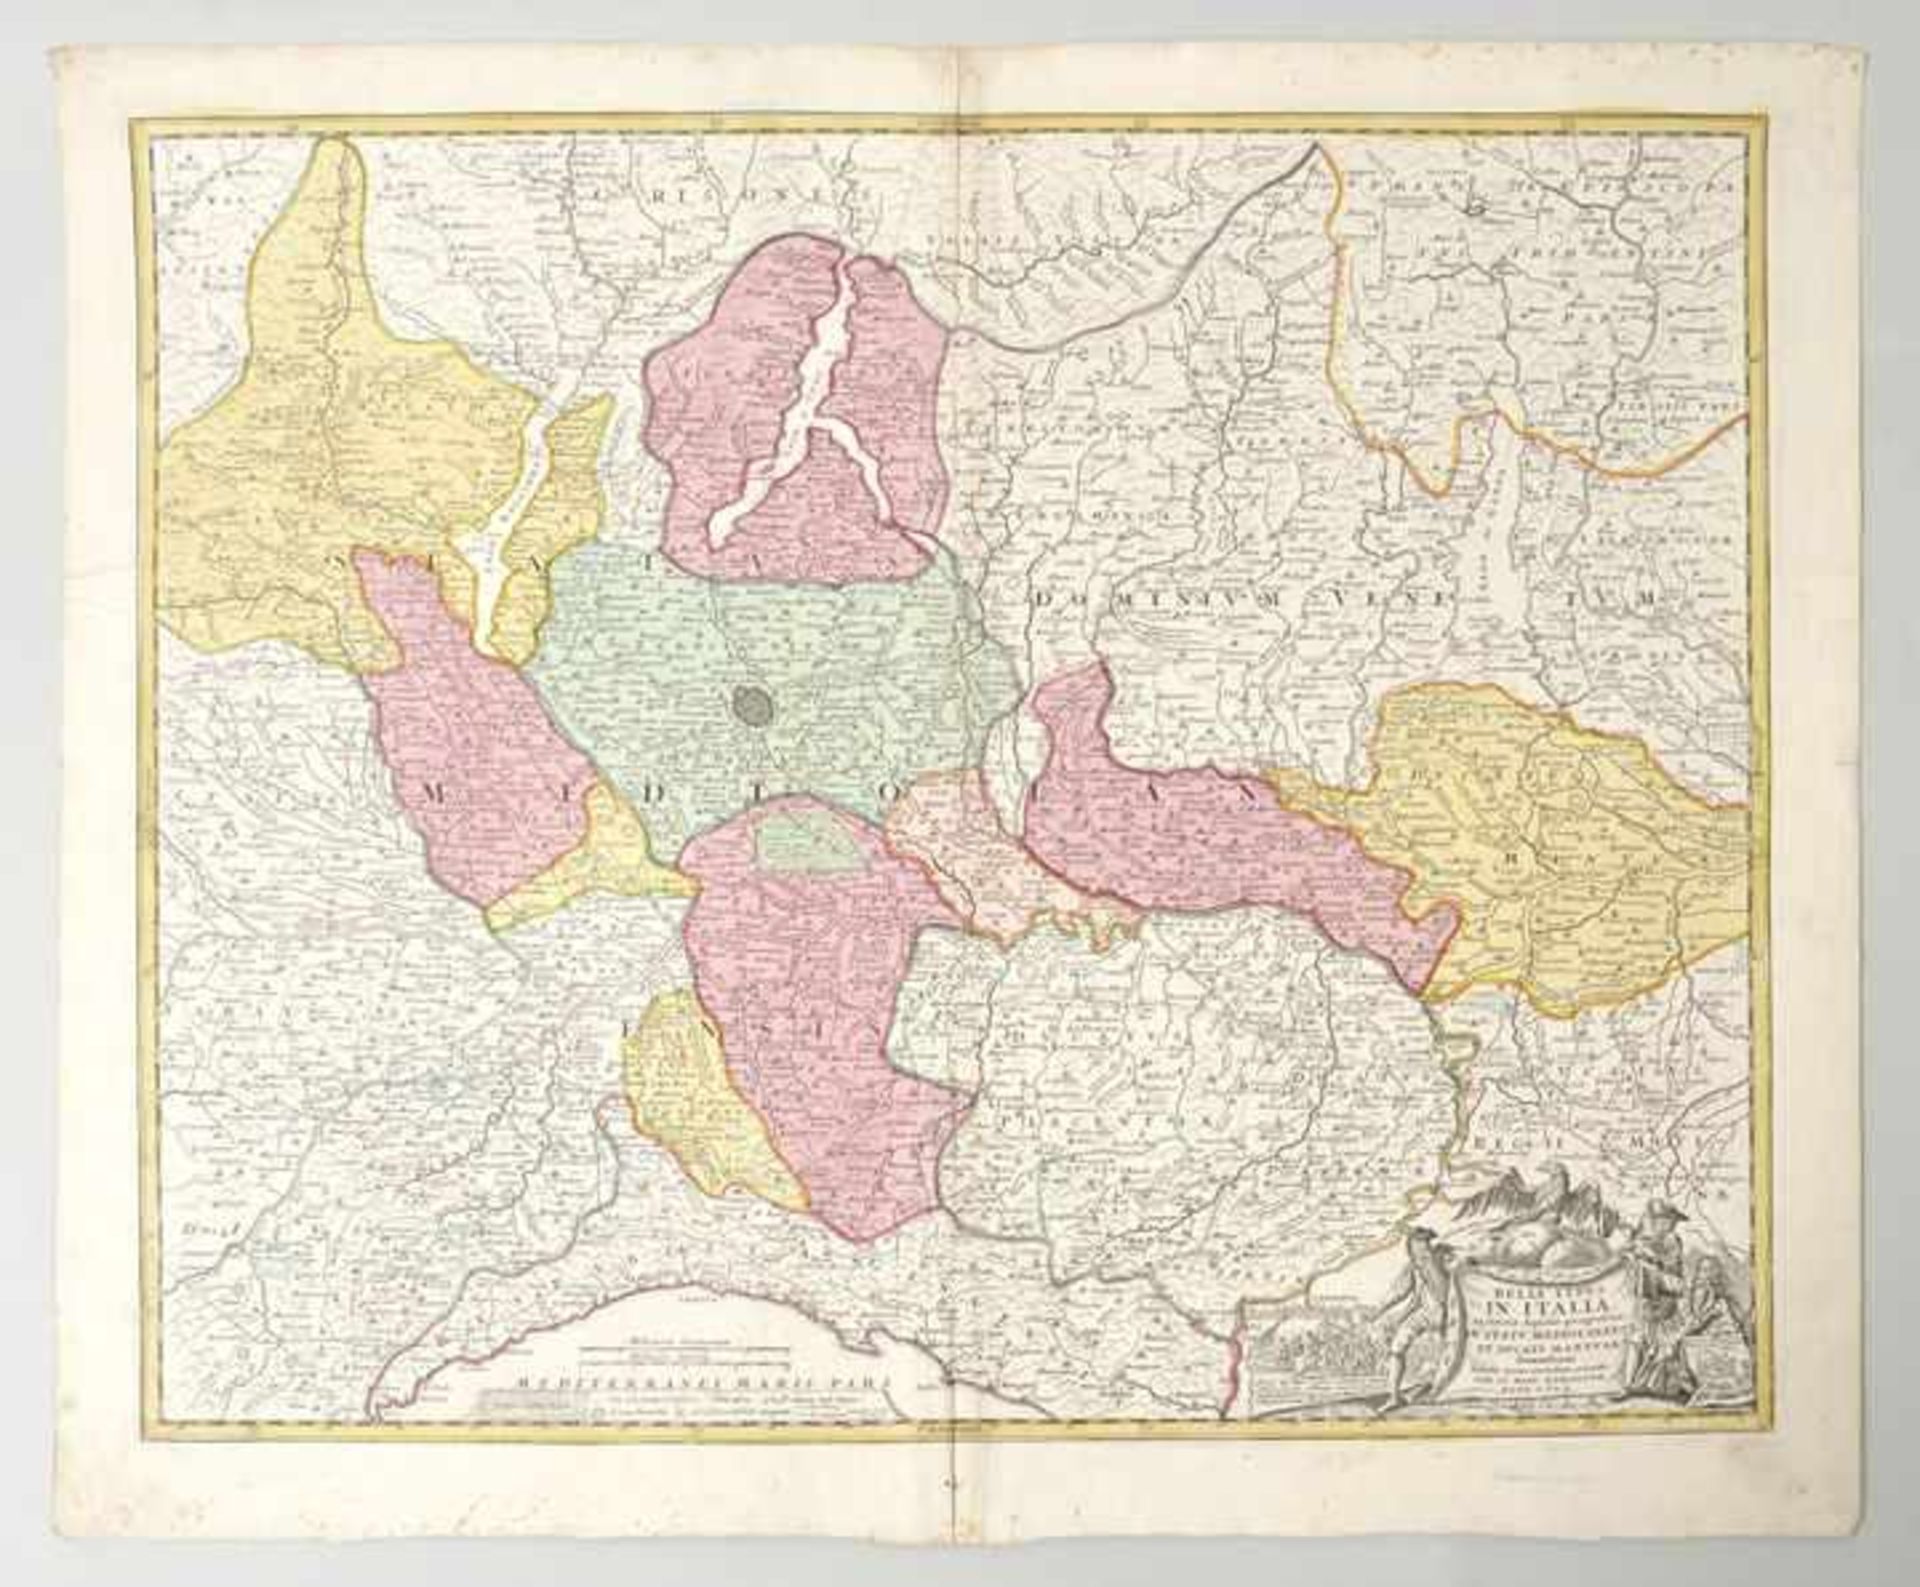 Karte von Oberitalien, ca. 1720 "Belli Typus in Italia victricis Aquilae progressus in Statu